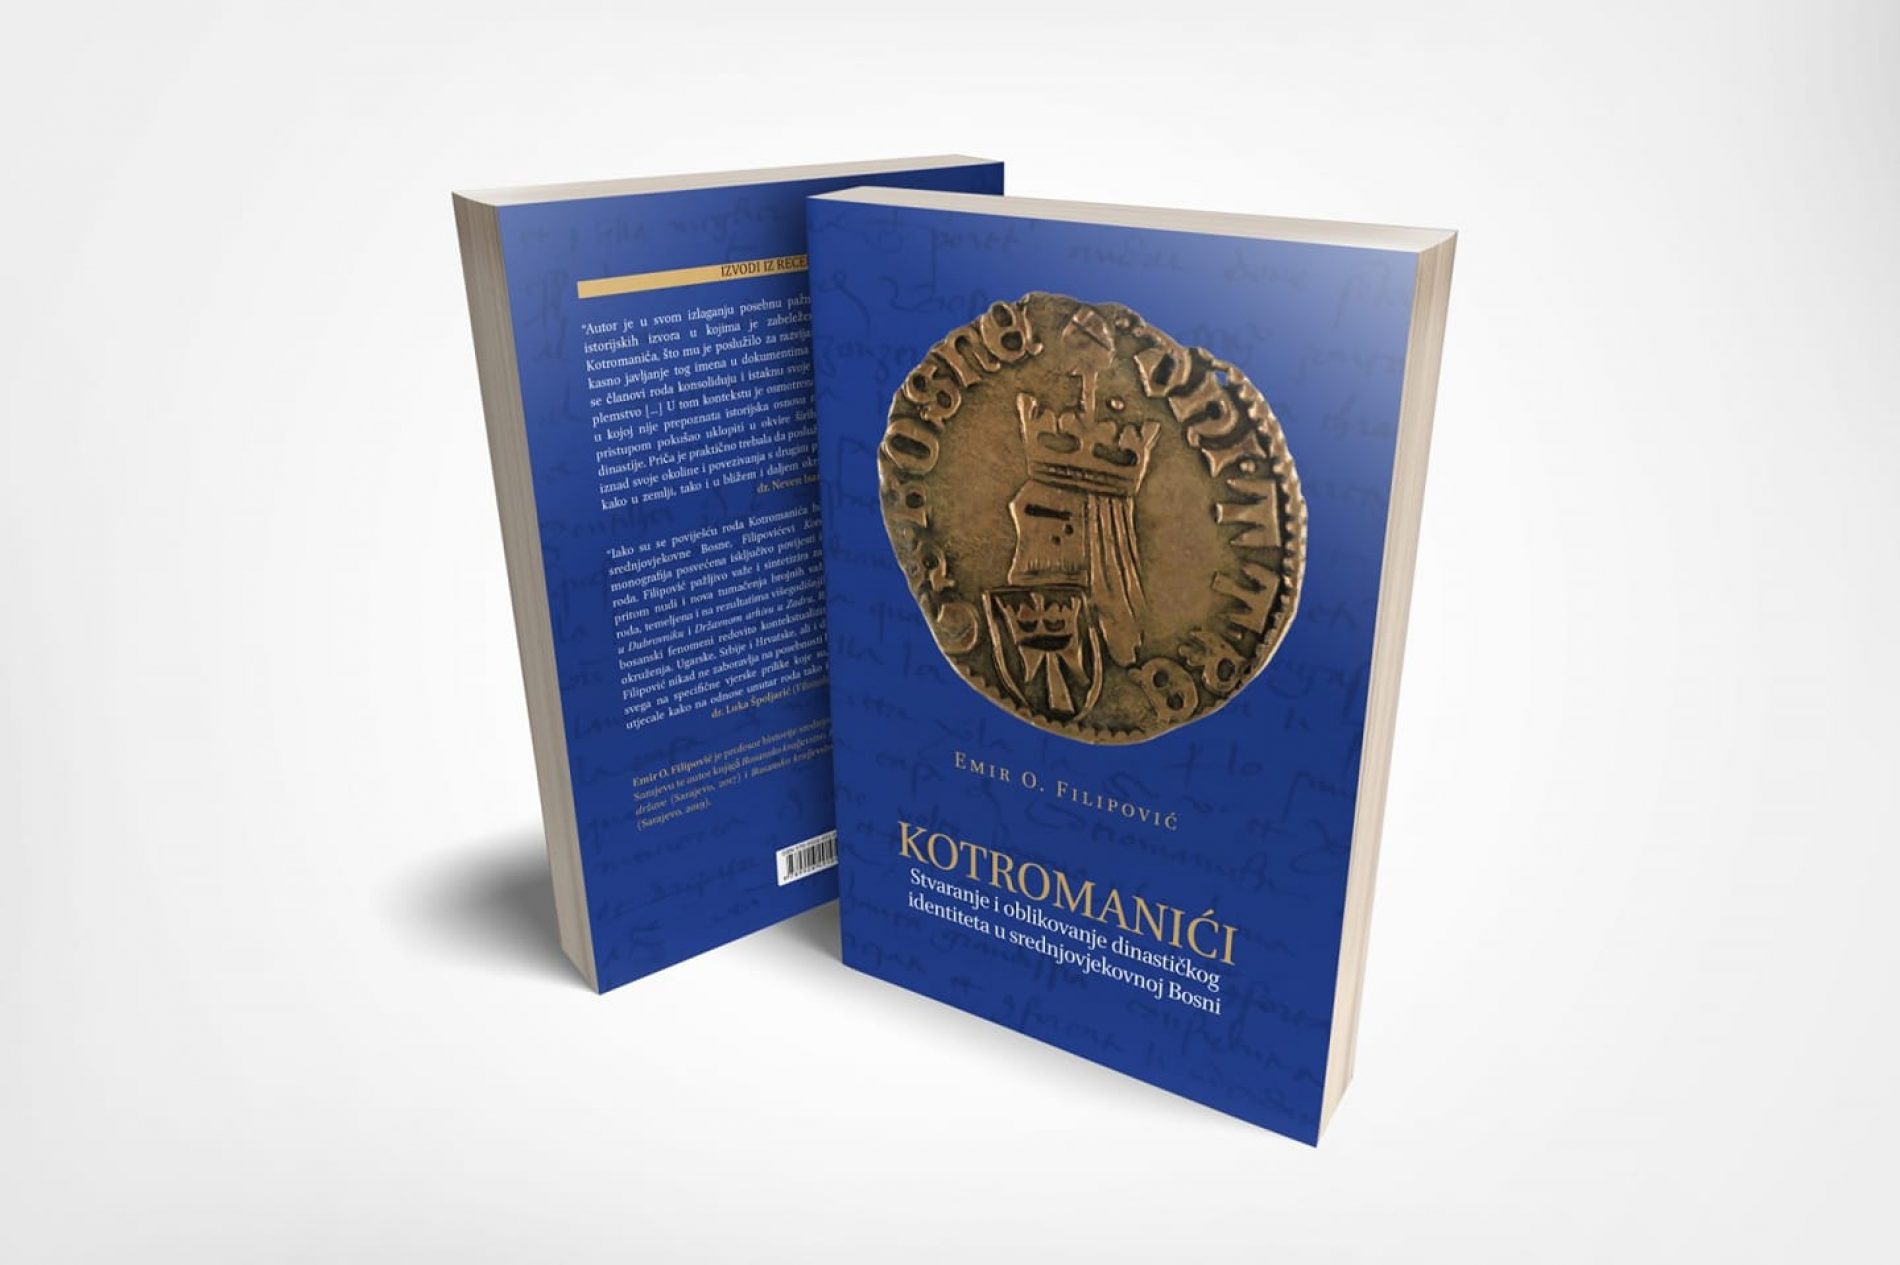 Knjiga “Kotromanići: stvaranje i oblikovanje dinastičkog identiteta u srednjovjekovnoj Bosni”